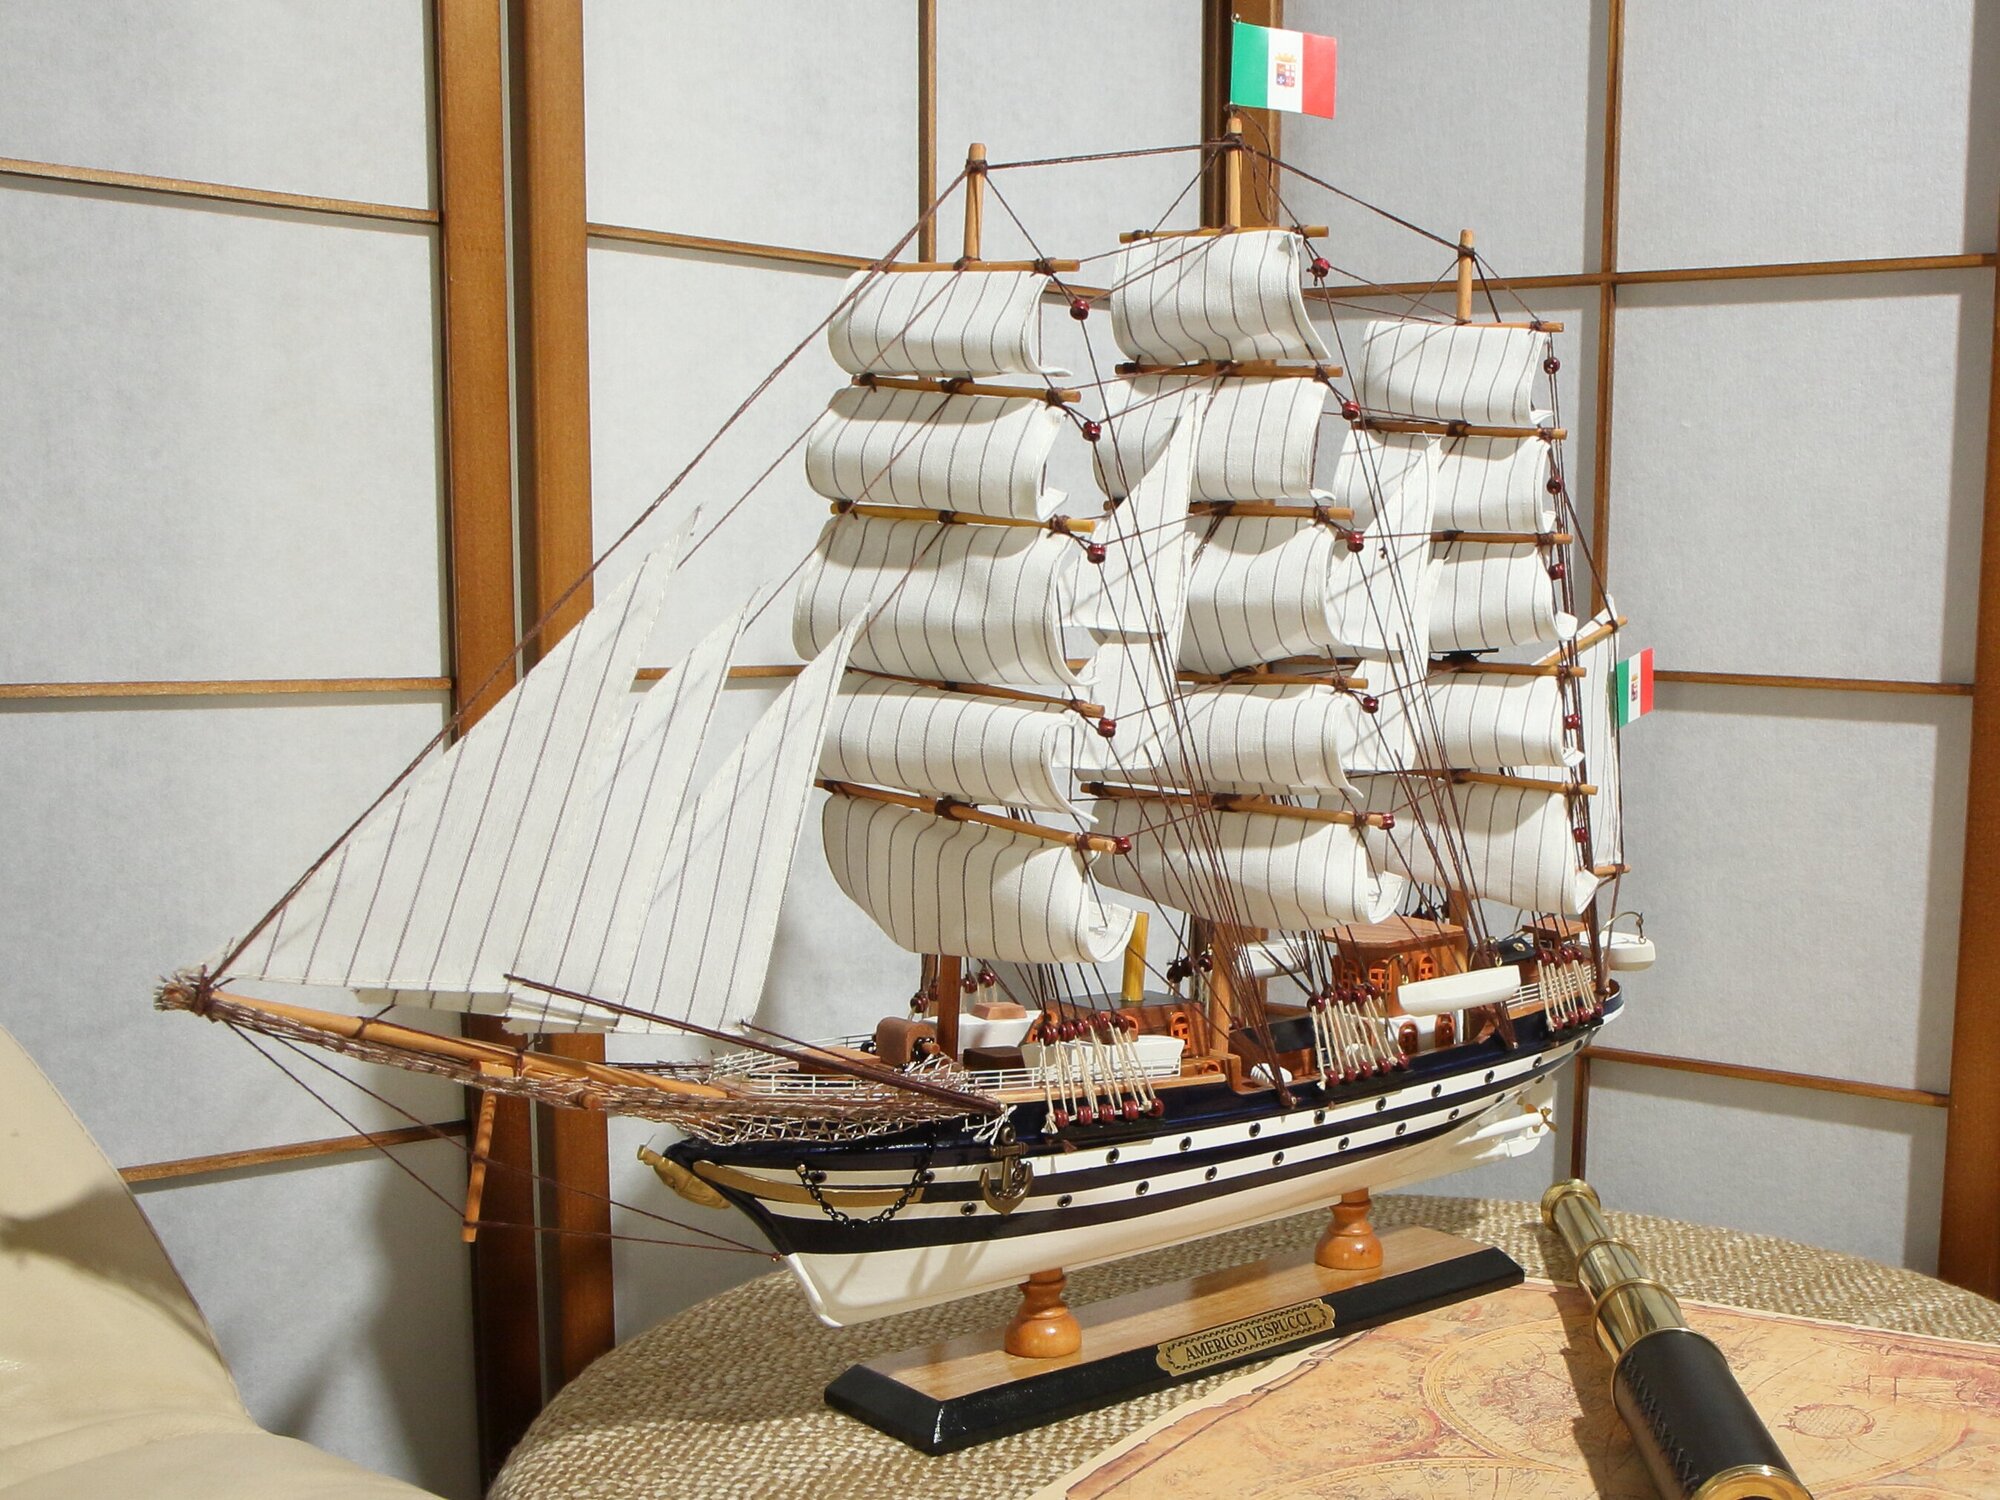 Модель парусного корабля "Америго Веспуччи" 64 см Италия (Amerigo Vespucci) собранный макет